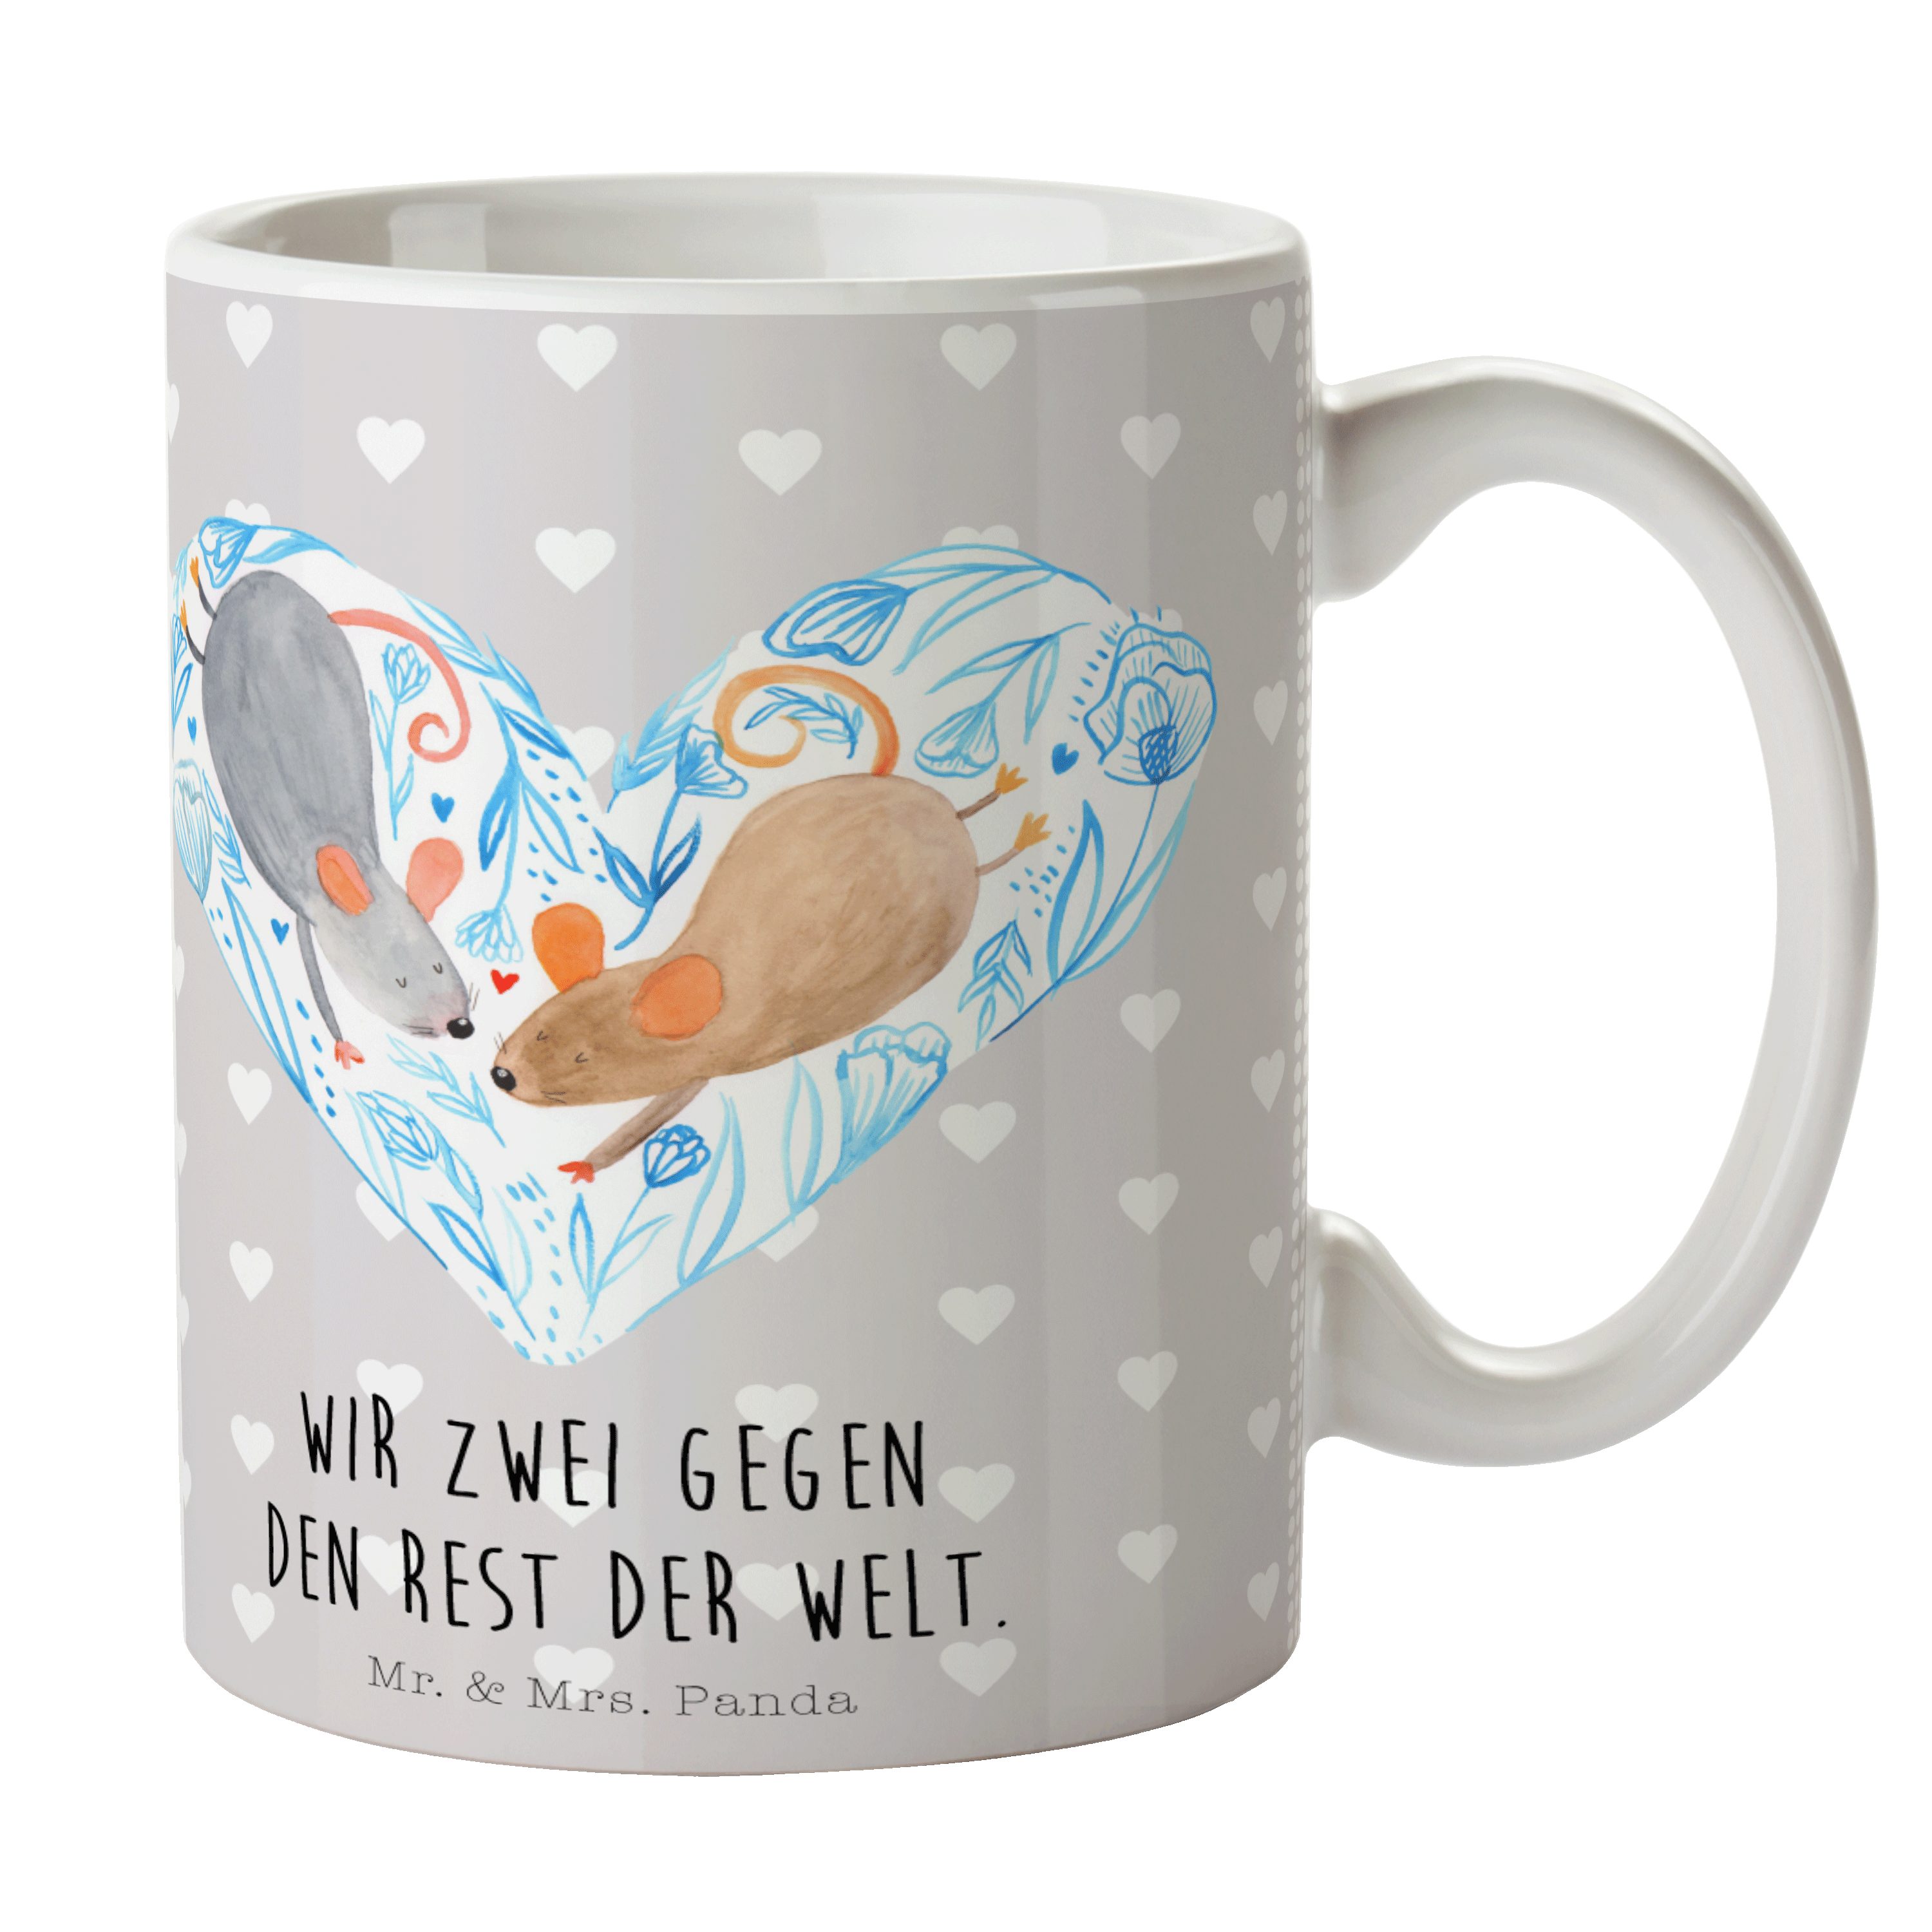 Mr. & Mrs. Panda Tasse Mäuse Herz - Grau Pastell - Geschenk, Ehemann, Liebesbotschaft, Kaffe, Keramik